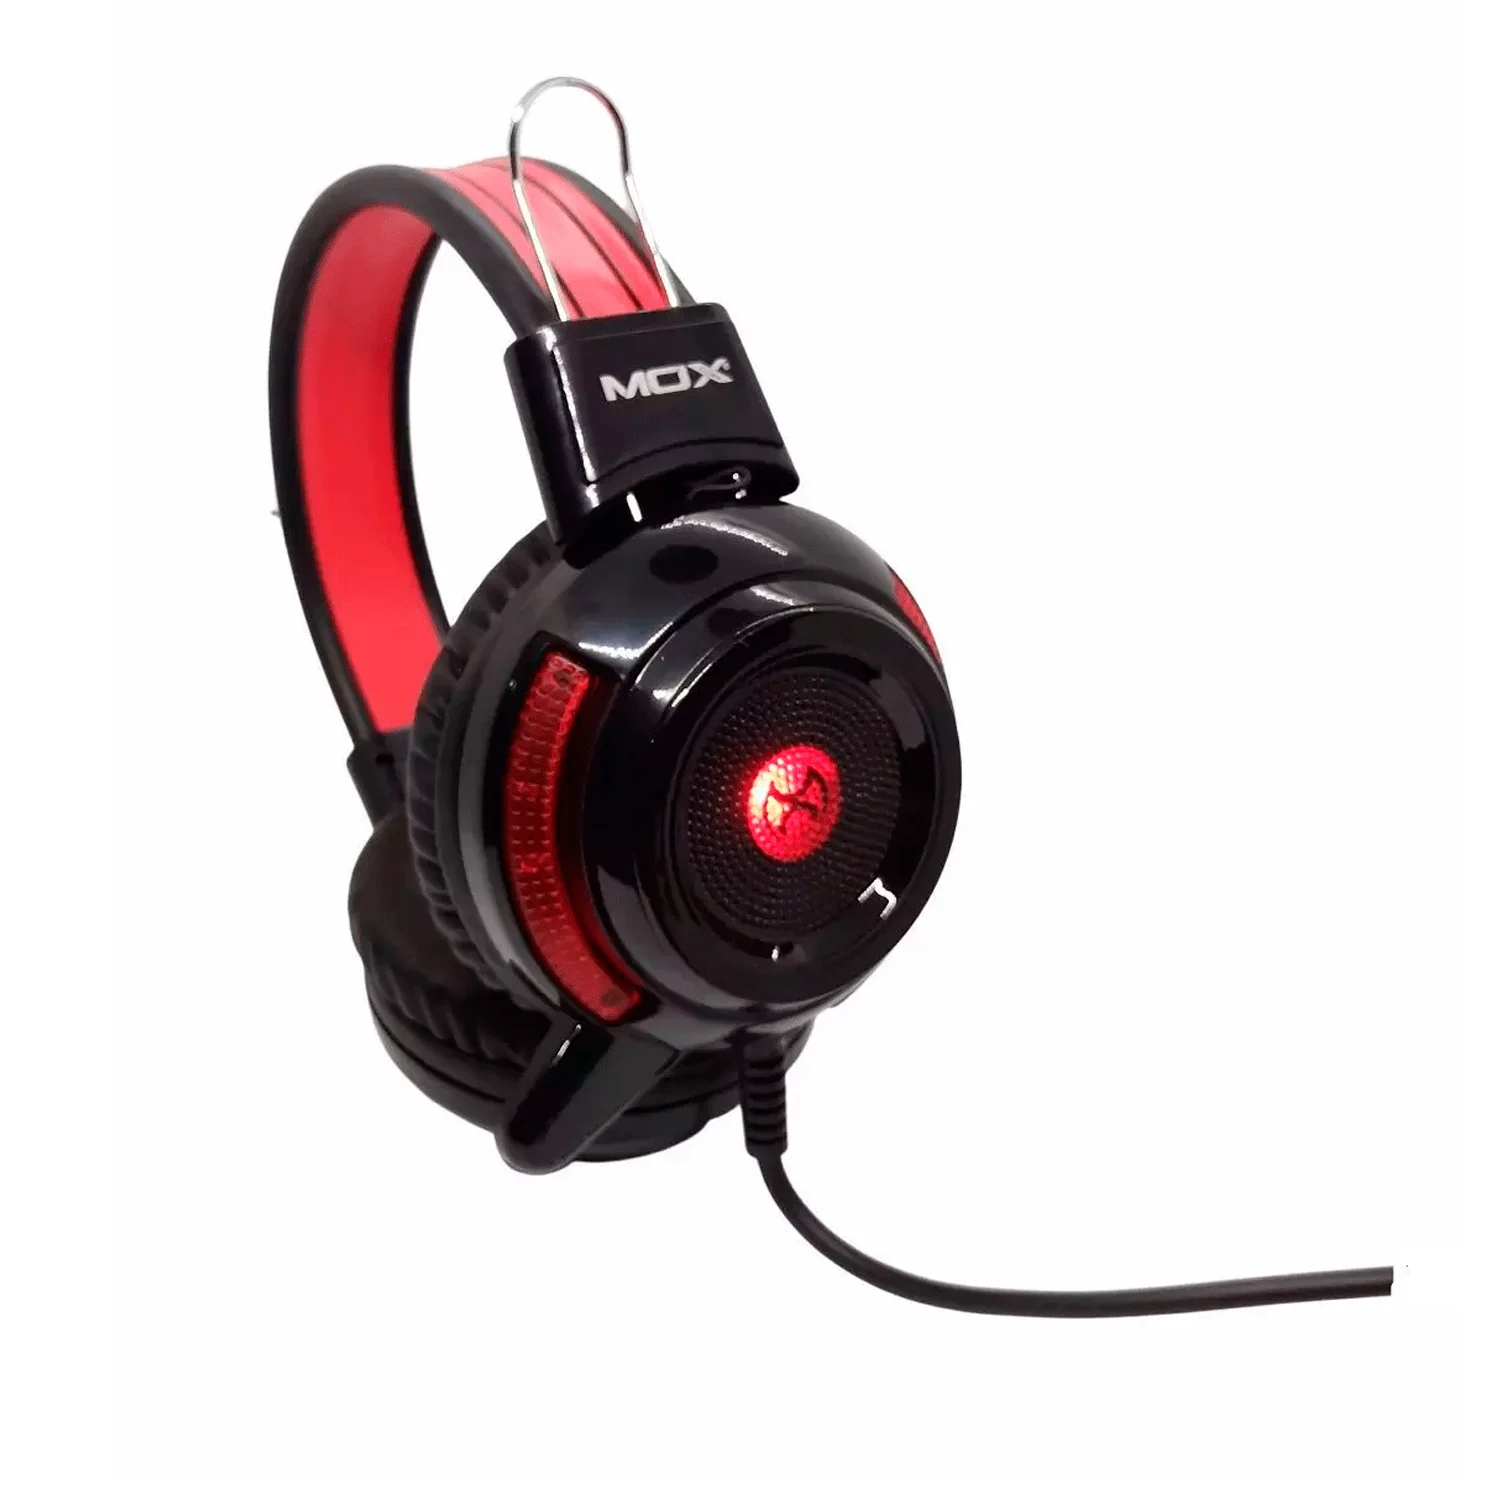 Headset Gamer Mox MO-GH700 Com Fio / Microfone - Preto e Vermelho